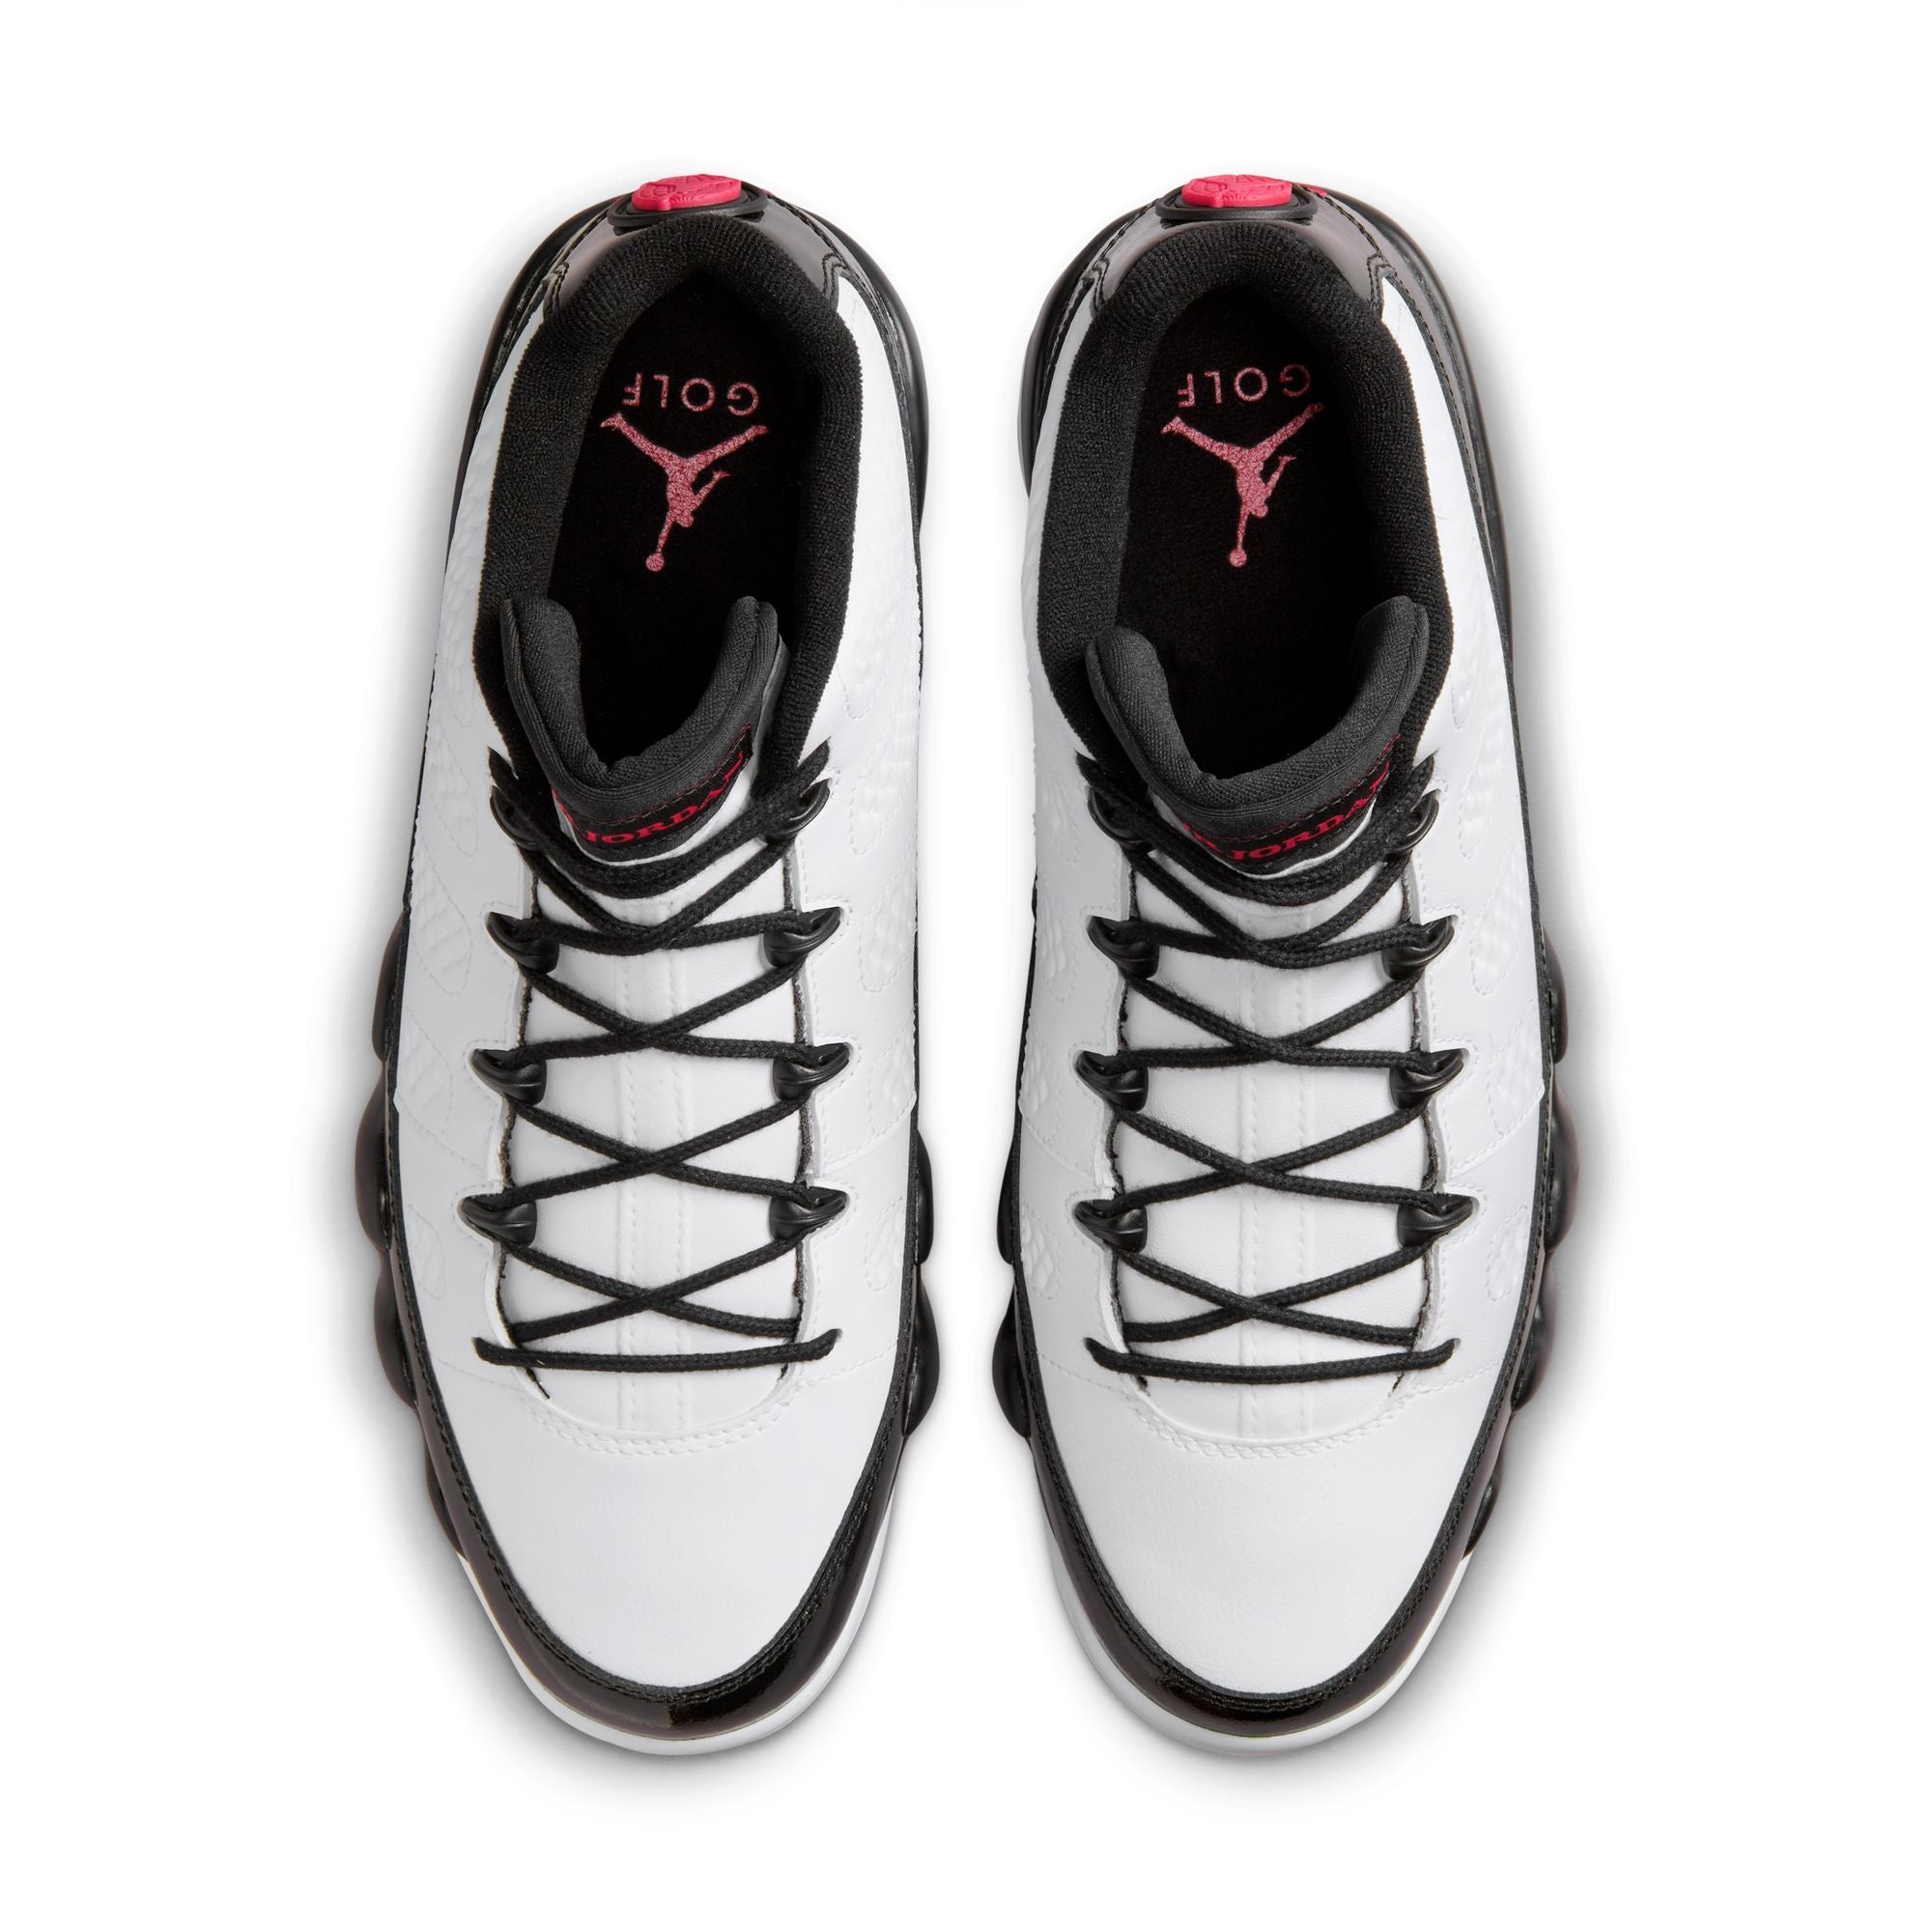 Nike Air Jordan 9 Retro Golf